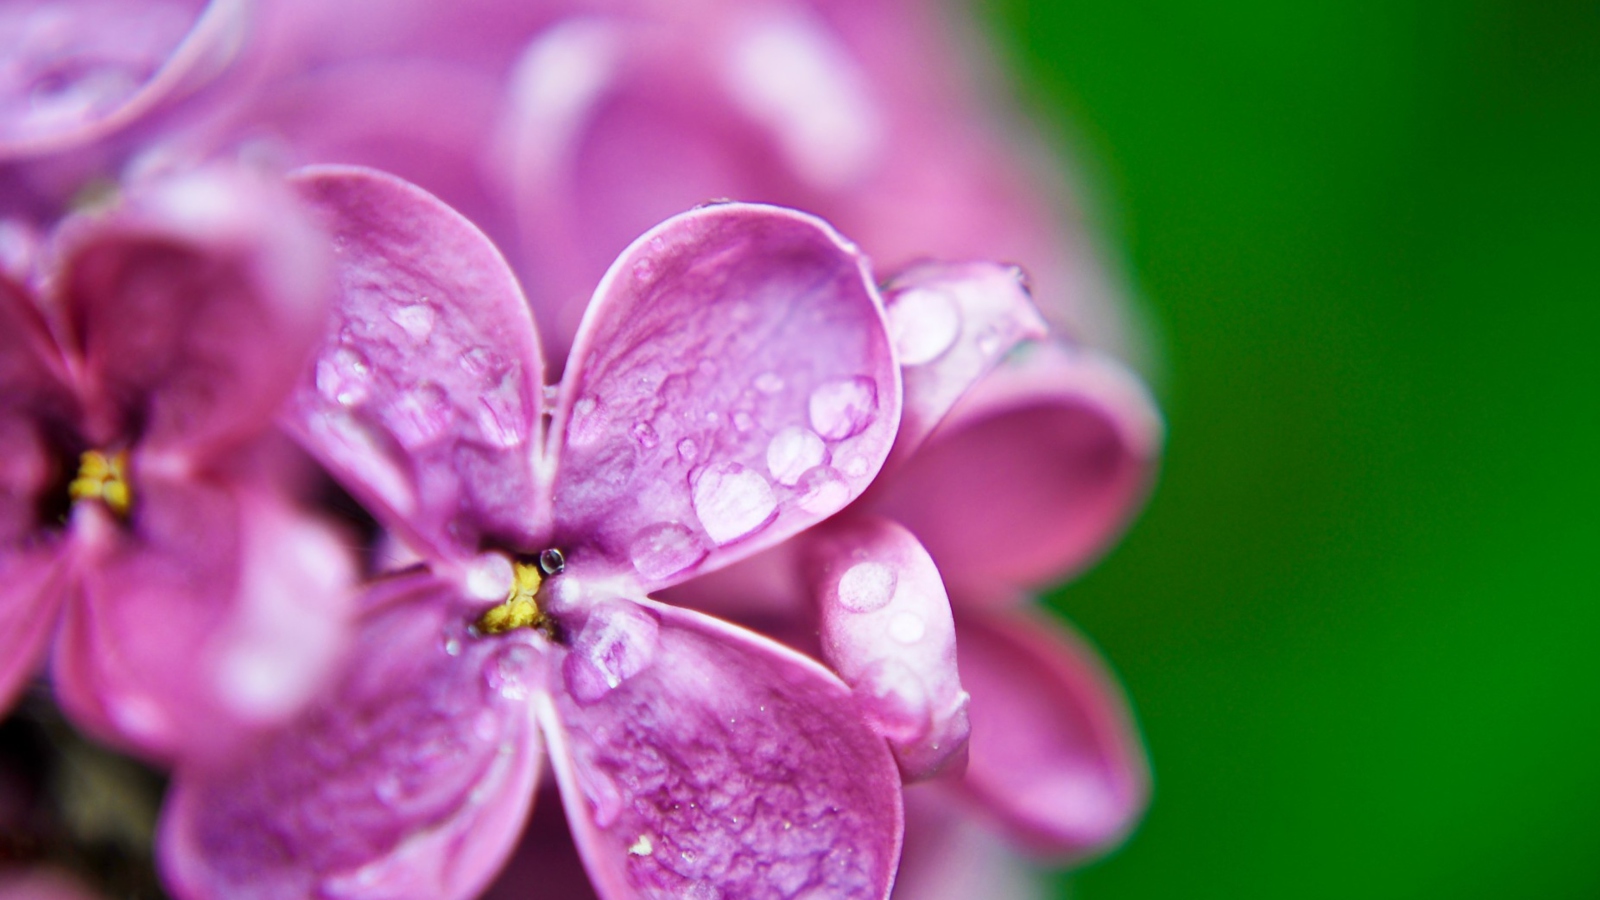 Dew Drops On Lilac Petals wallpaper 1600x900